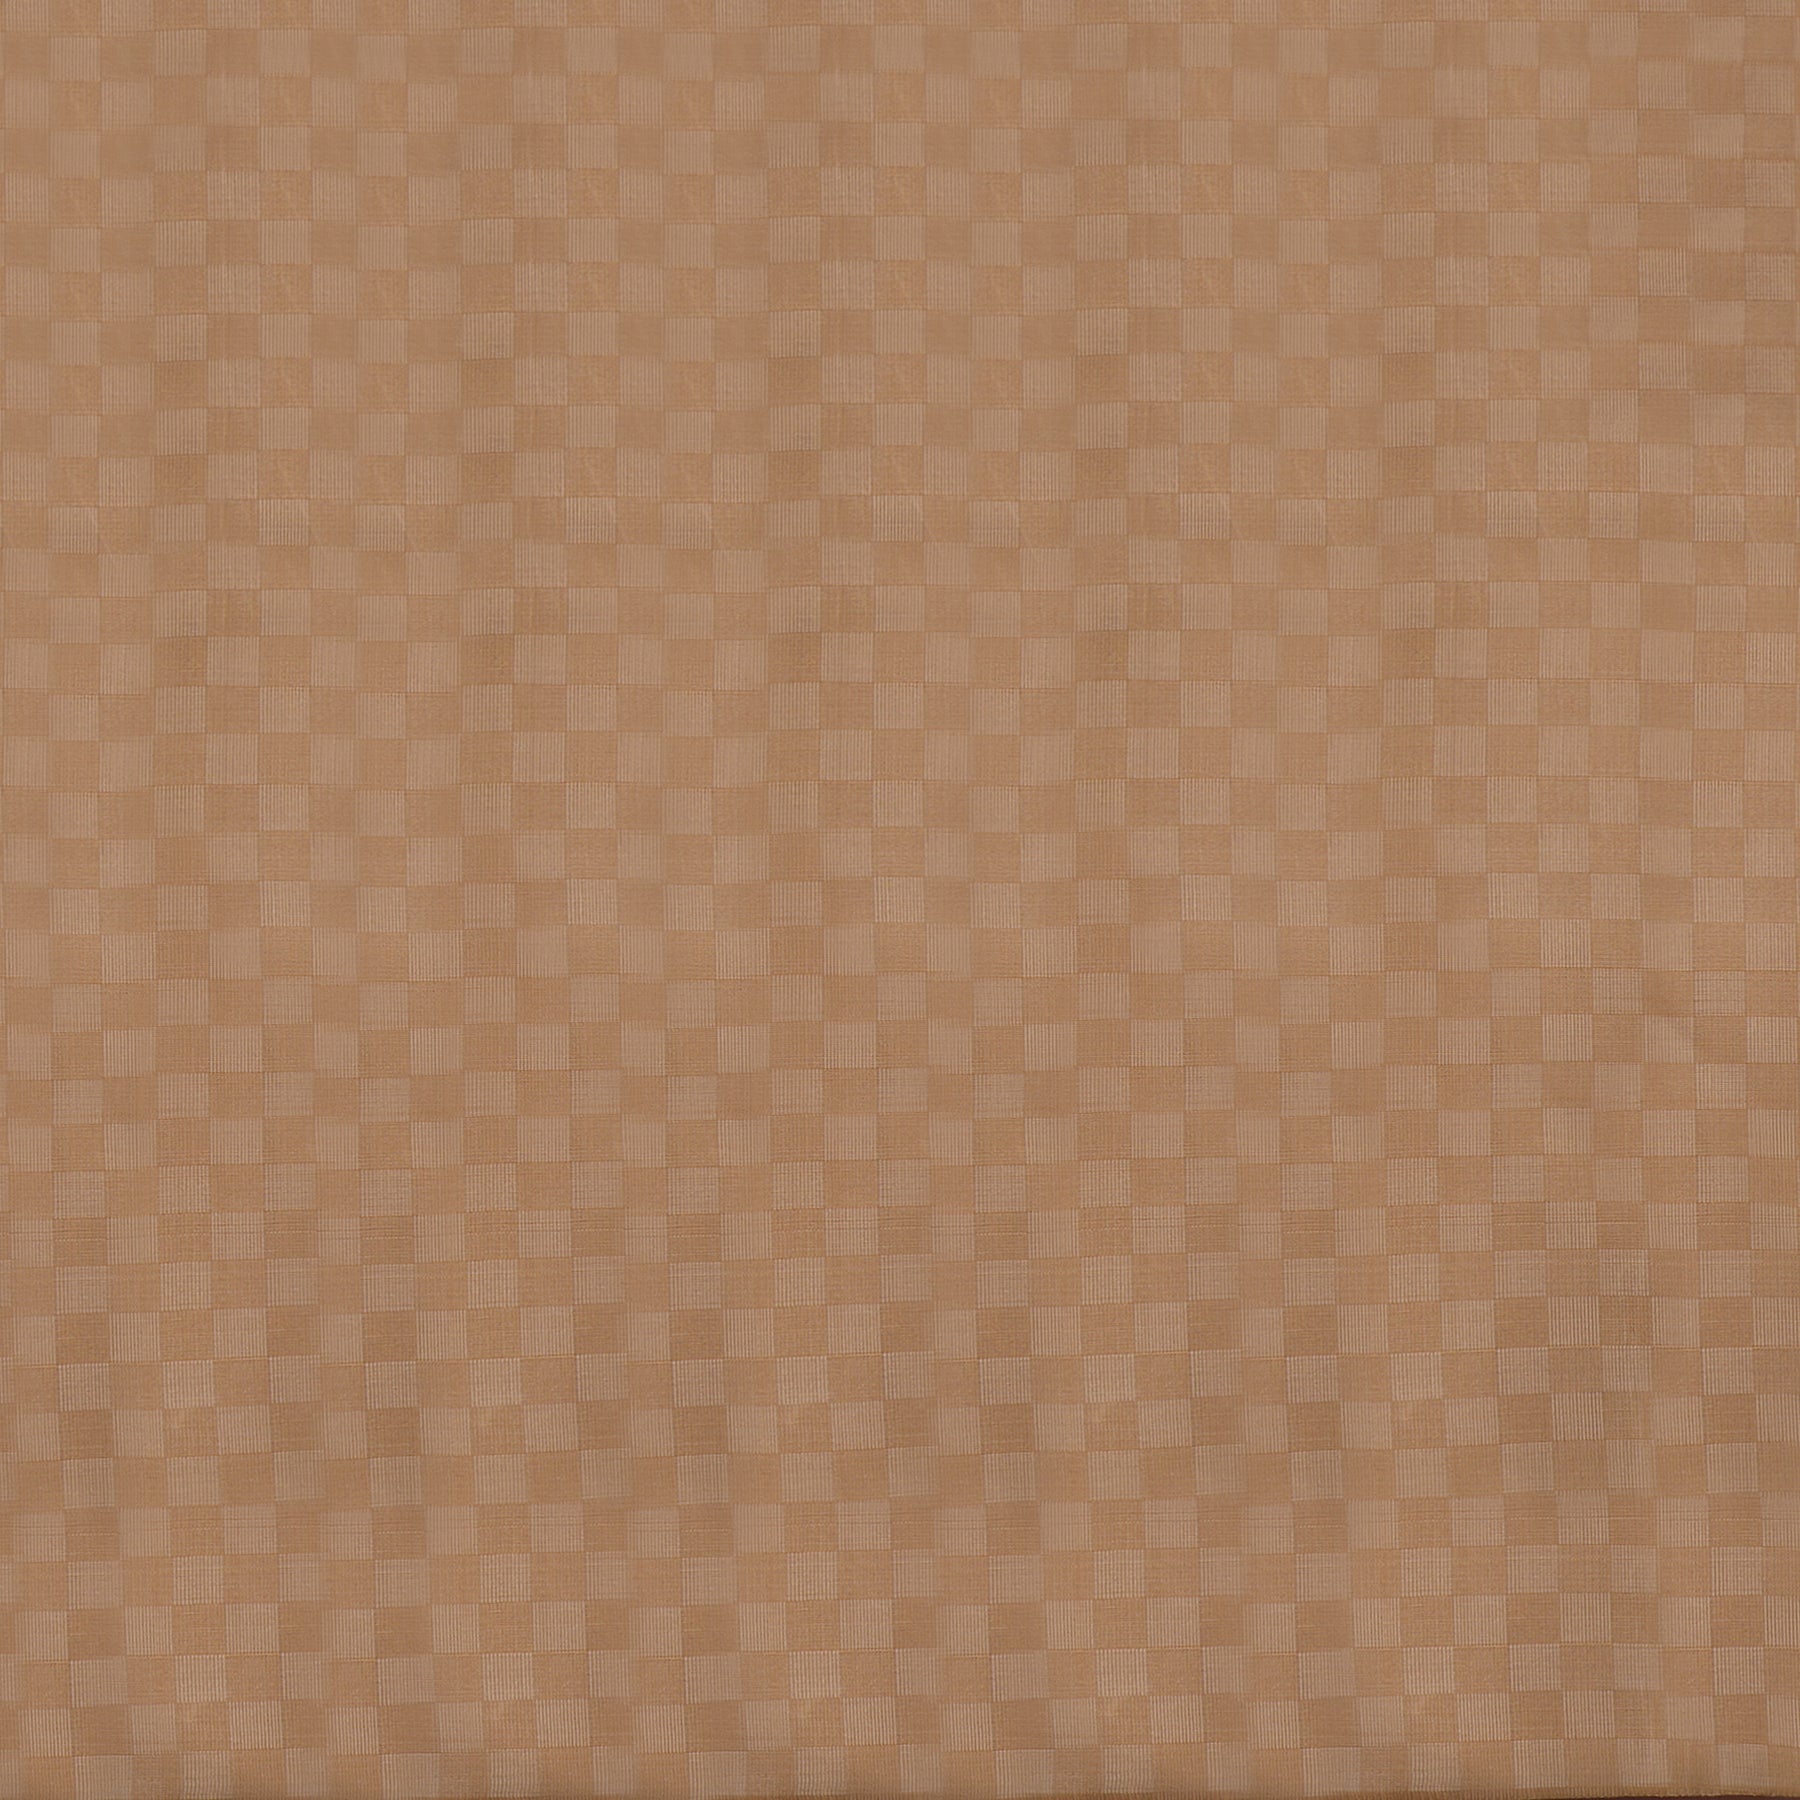 Kanakavalli Kanjivaram Silk Fabric Length 20-110-HF001-01526 - Full View